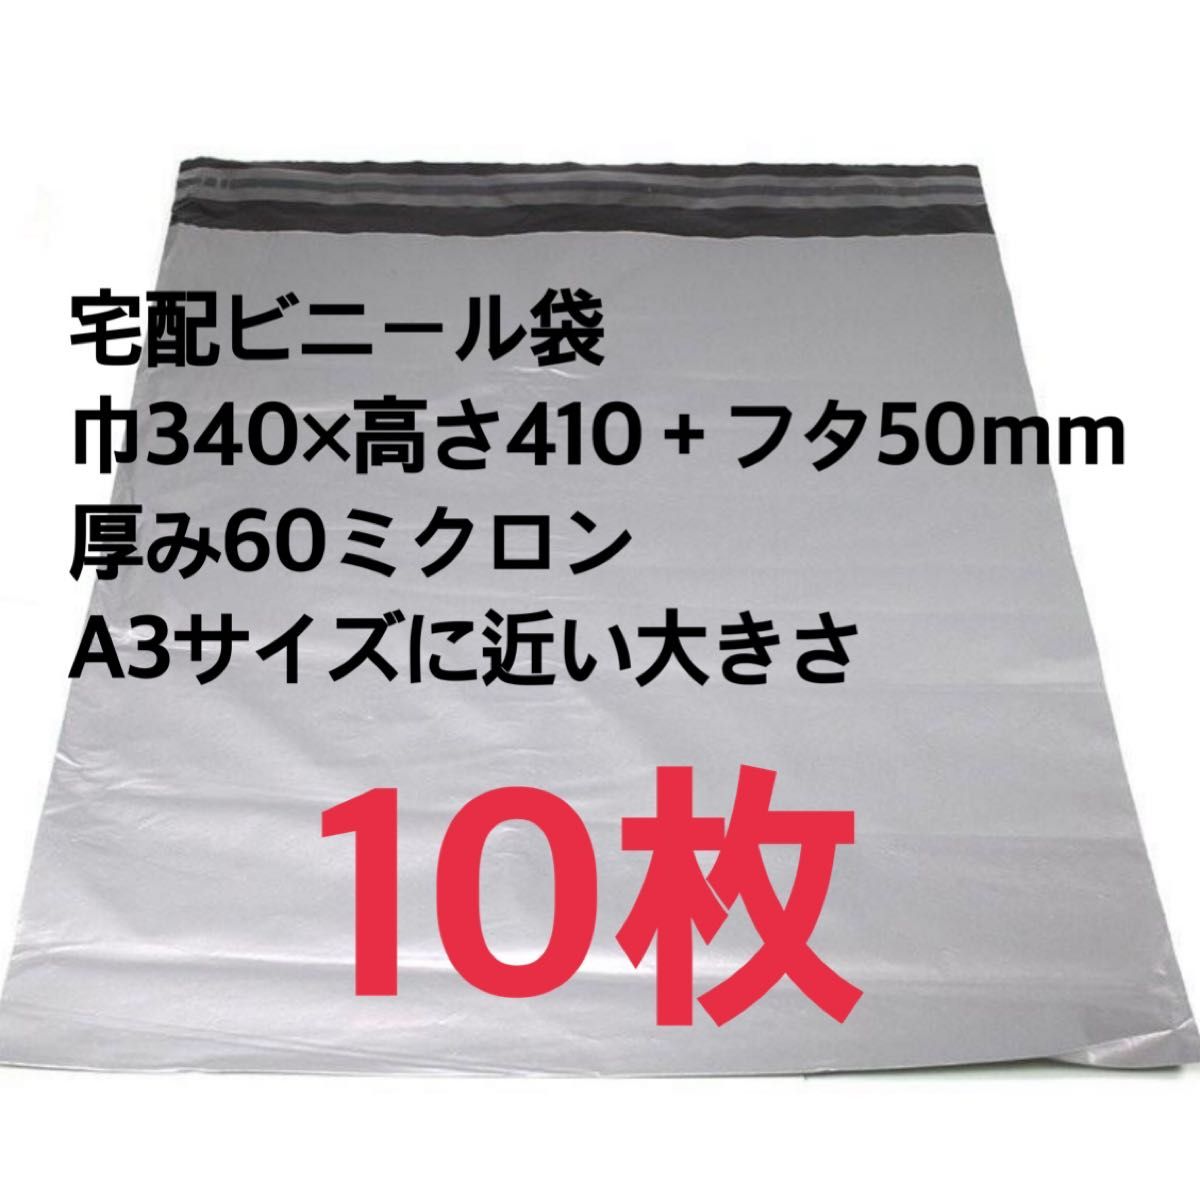 宅配ビニール袋 テープ付き 巾340×高さ410＋フタ50mm 厚み60ミクロン A3サイズに近い大きさ 梱包材 宅配袋 10枚 